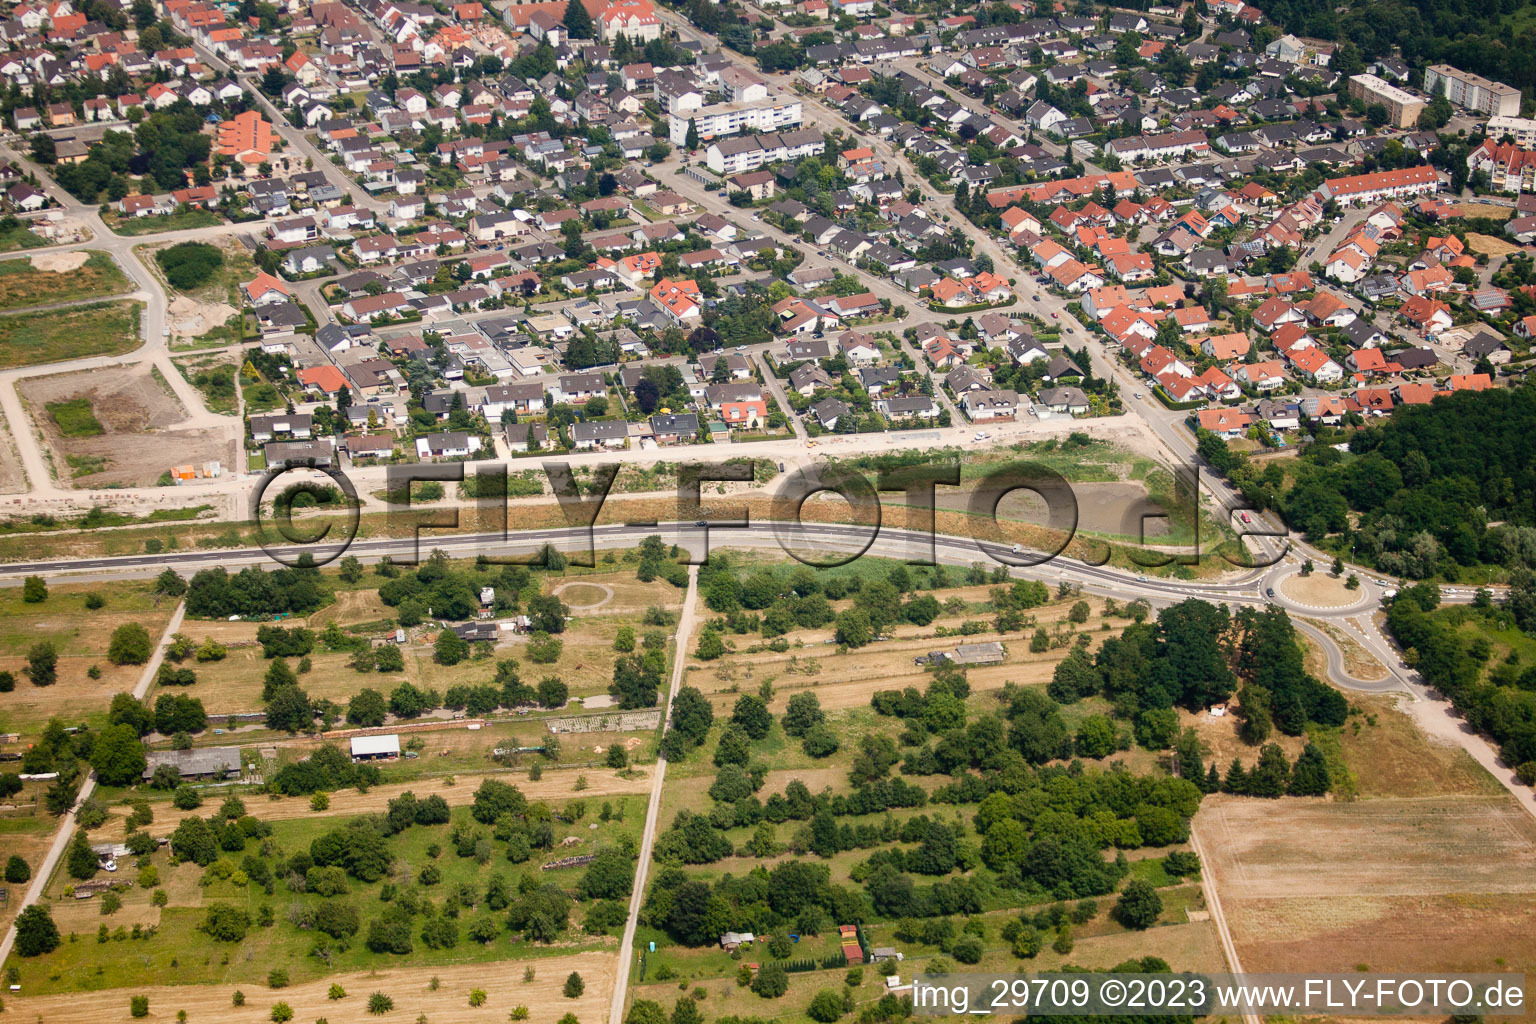 Vue oblique de Nouvelle zone de développement ouest à Jockgrim dans le département Rhénanie-Palatinat, Allemagne